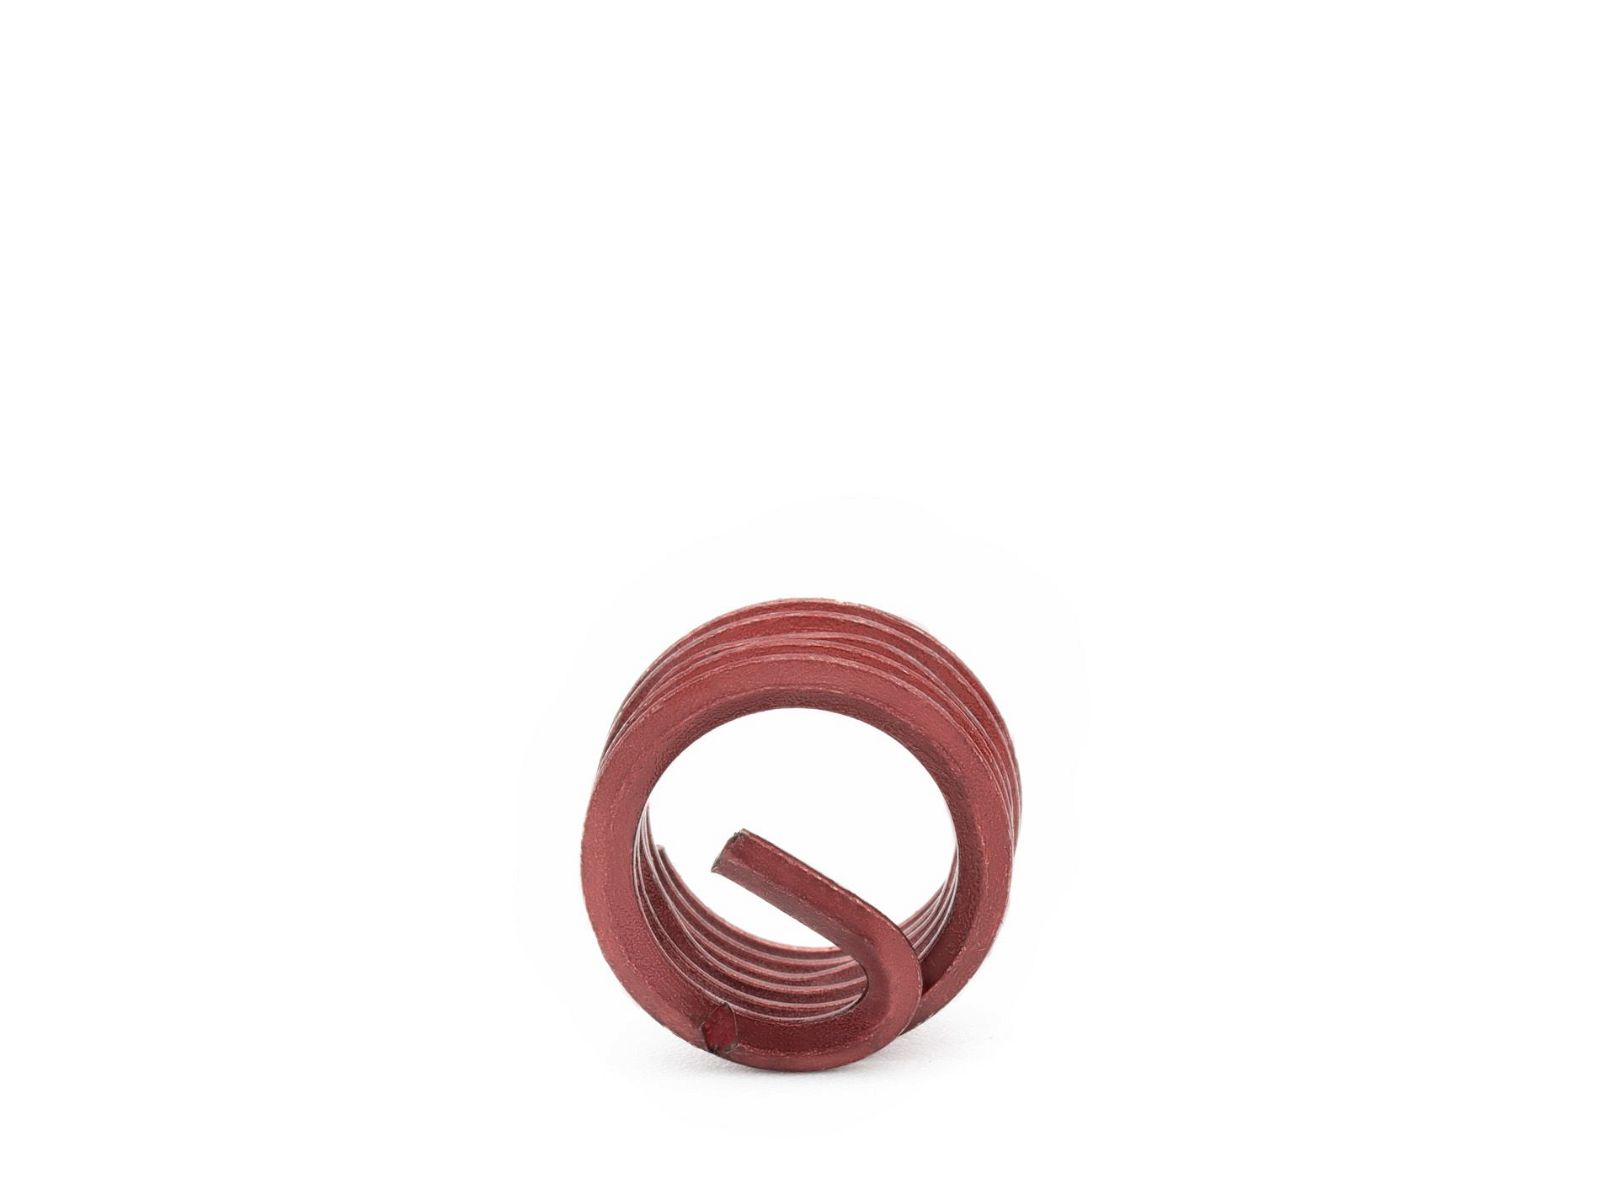 BaerCoil Wire Thread Inserts BSF 3/8 x 20 - 1.0 D (9.53 mm) - screw grip (screw locking) - 100 pcs.